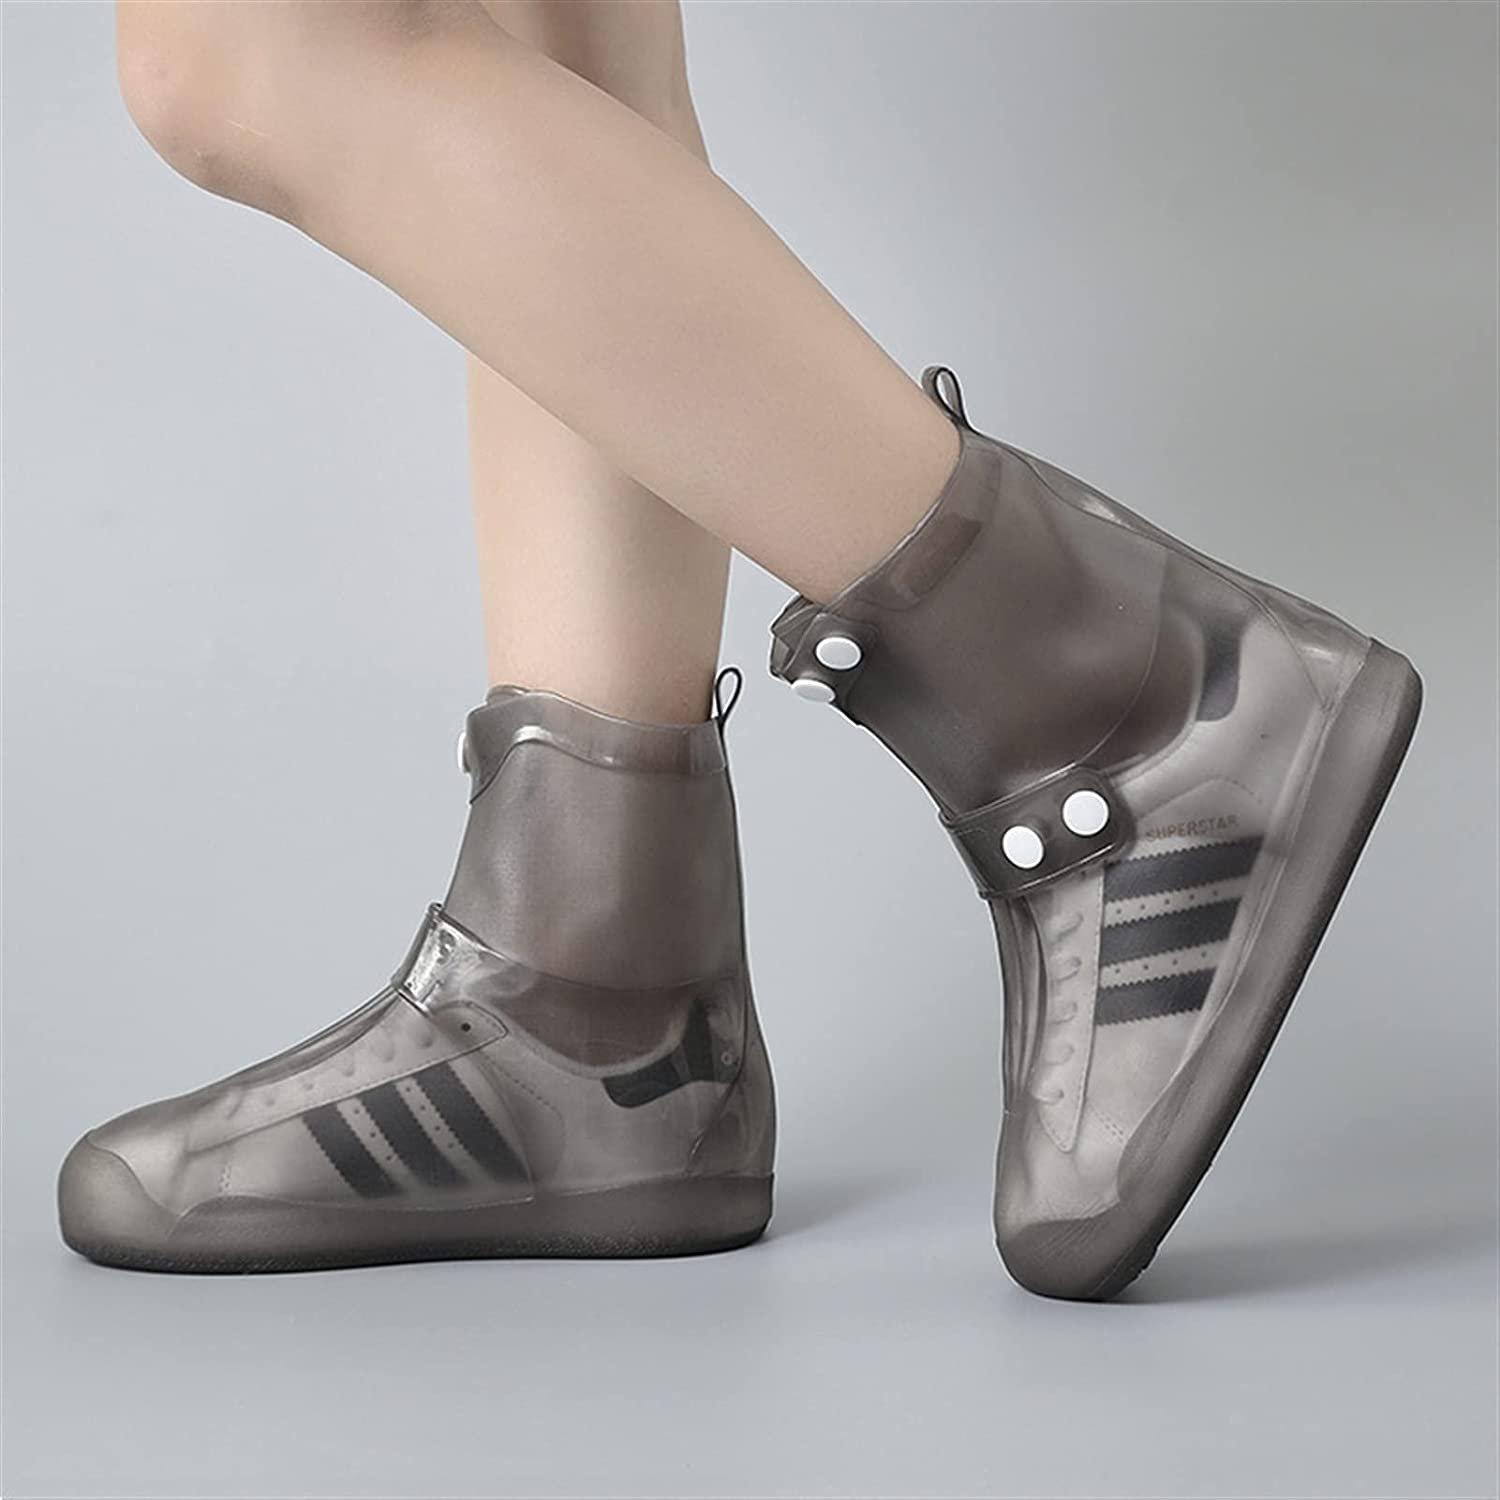 Фото 1 Cиликоновые чехлы-бахилы для обуви с застежкой XL 44-45 CG WSS3 Black